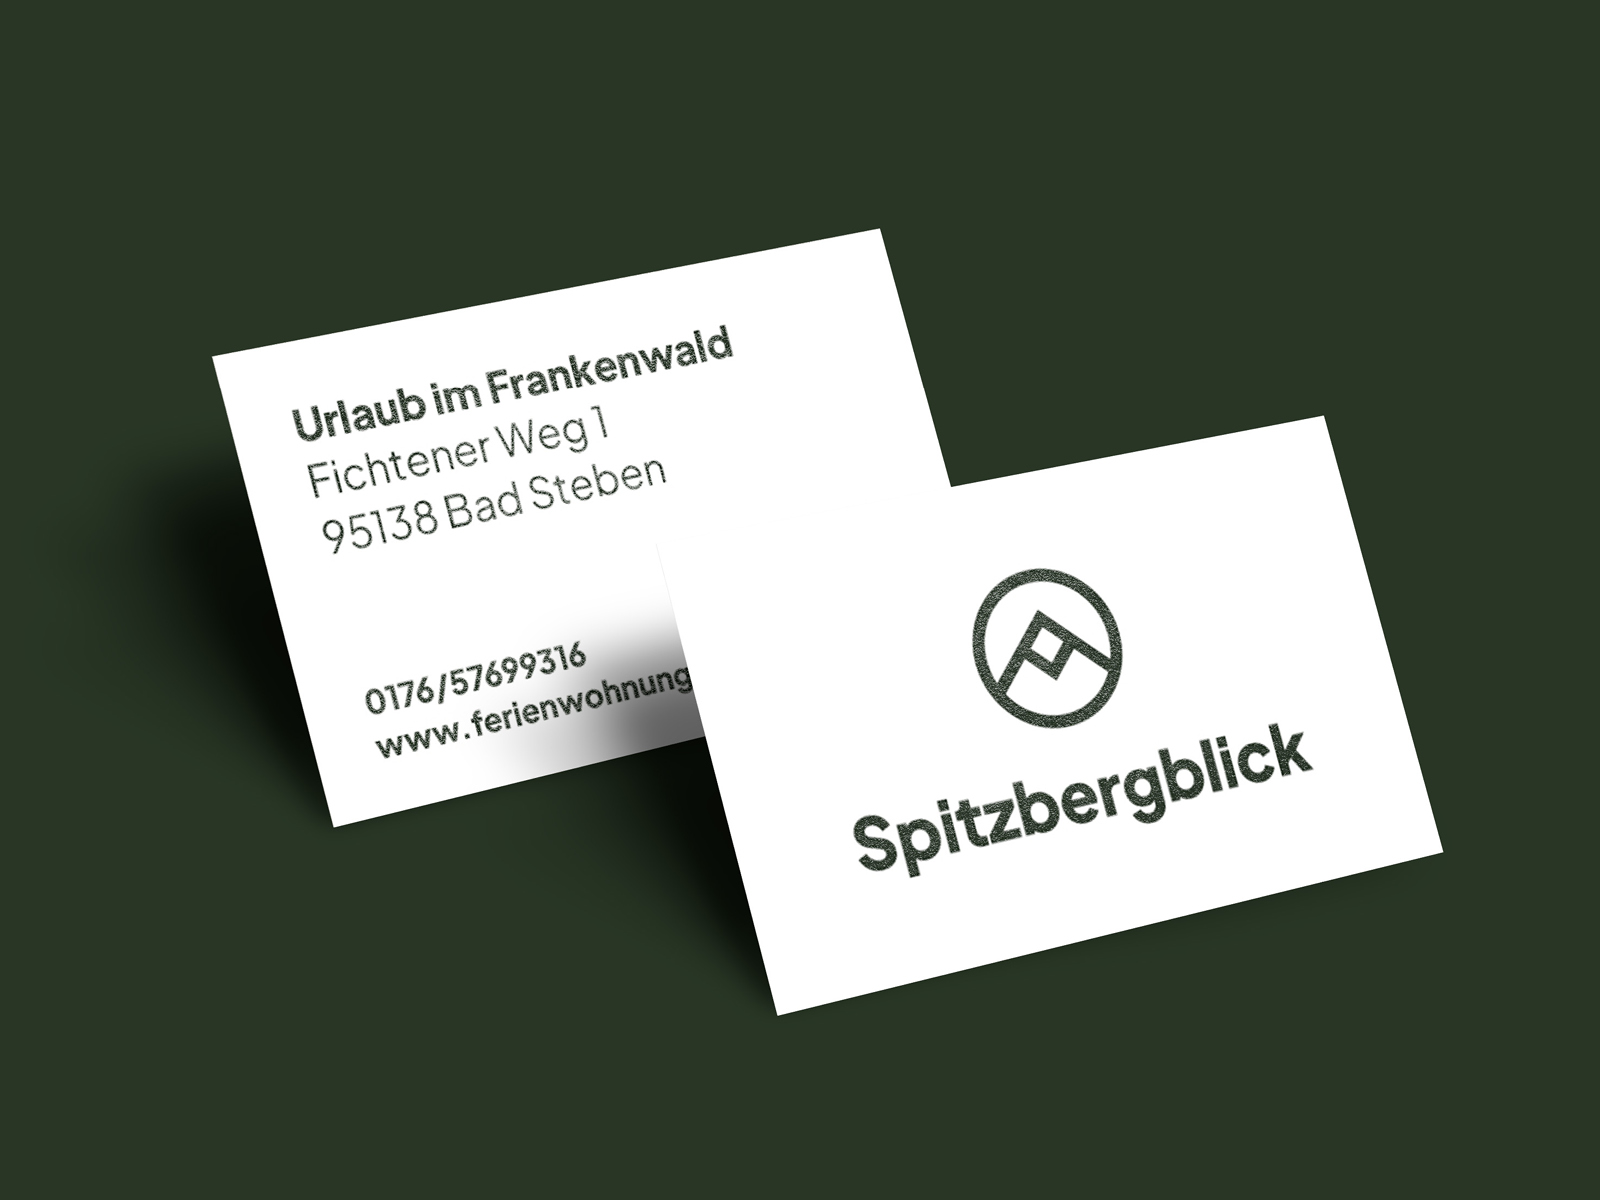 lwm-spitzbergblick-4